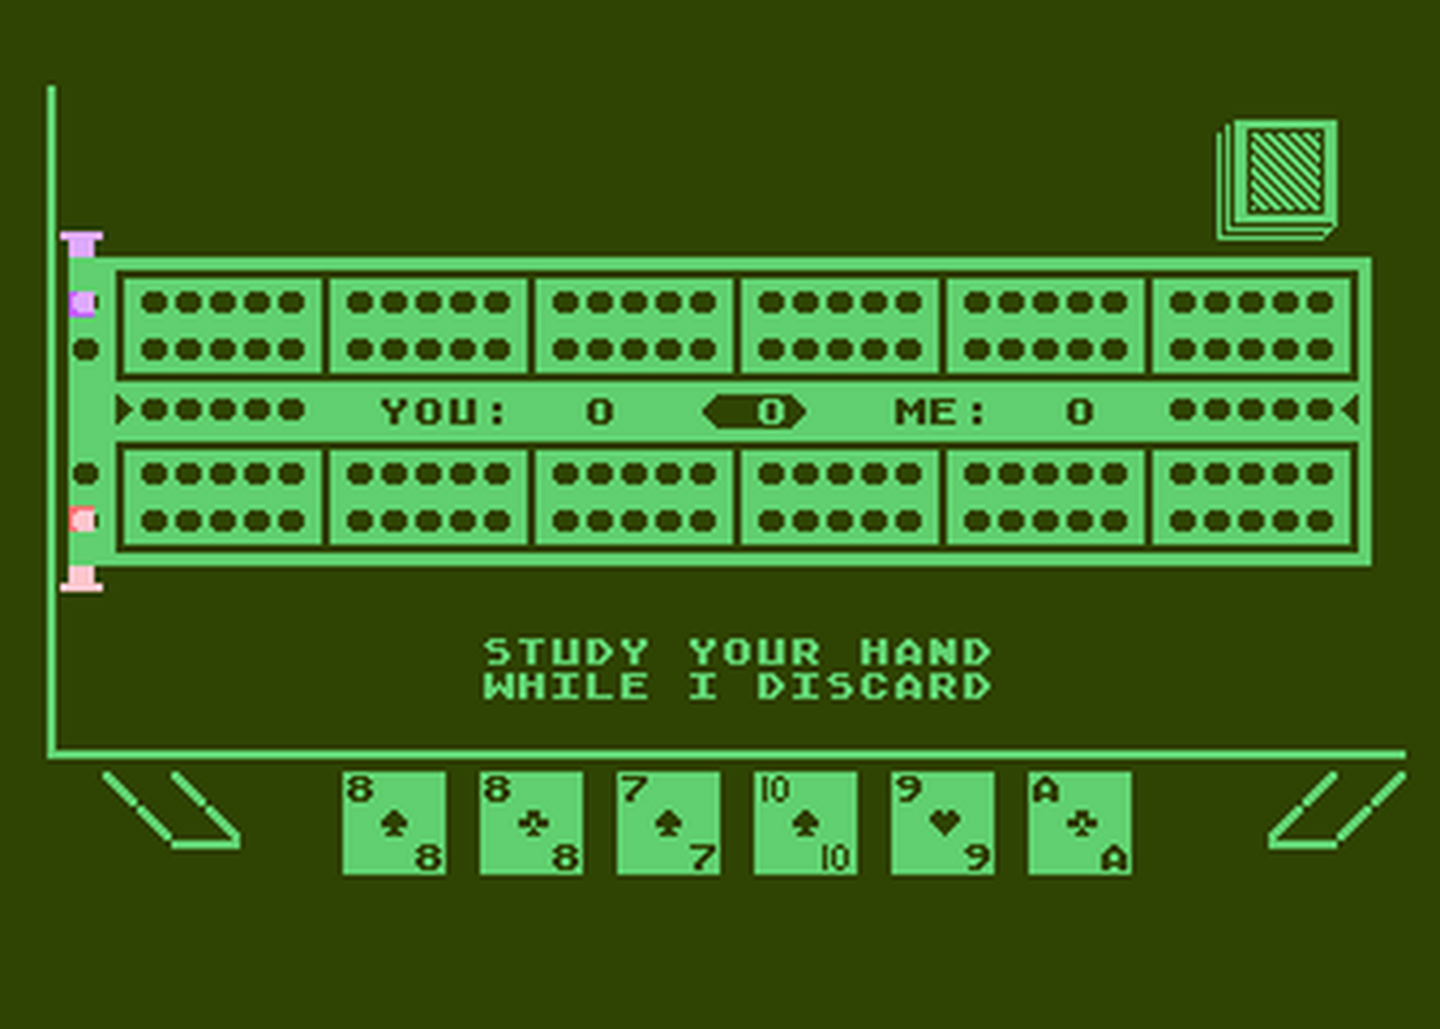 Atari GameBase Cribbage APX 1982